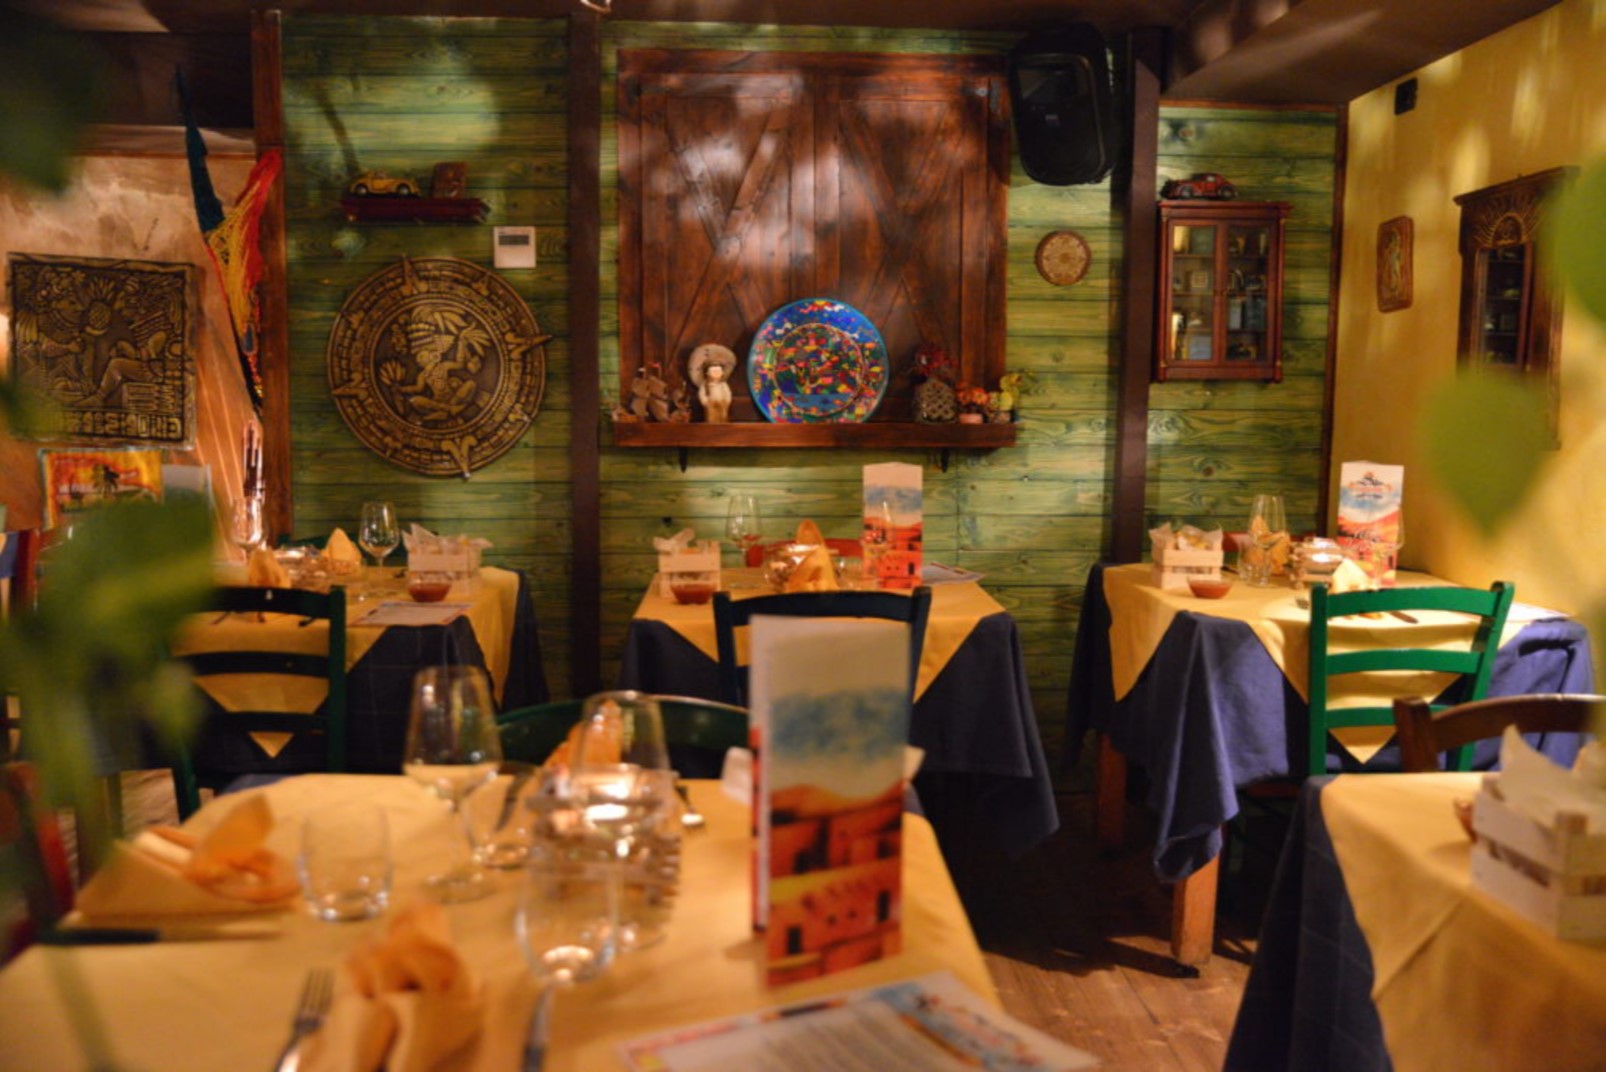 La Parrilla Mexicana - Mexican restaurant | Gentleman's chronicles